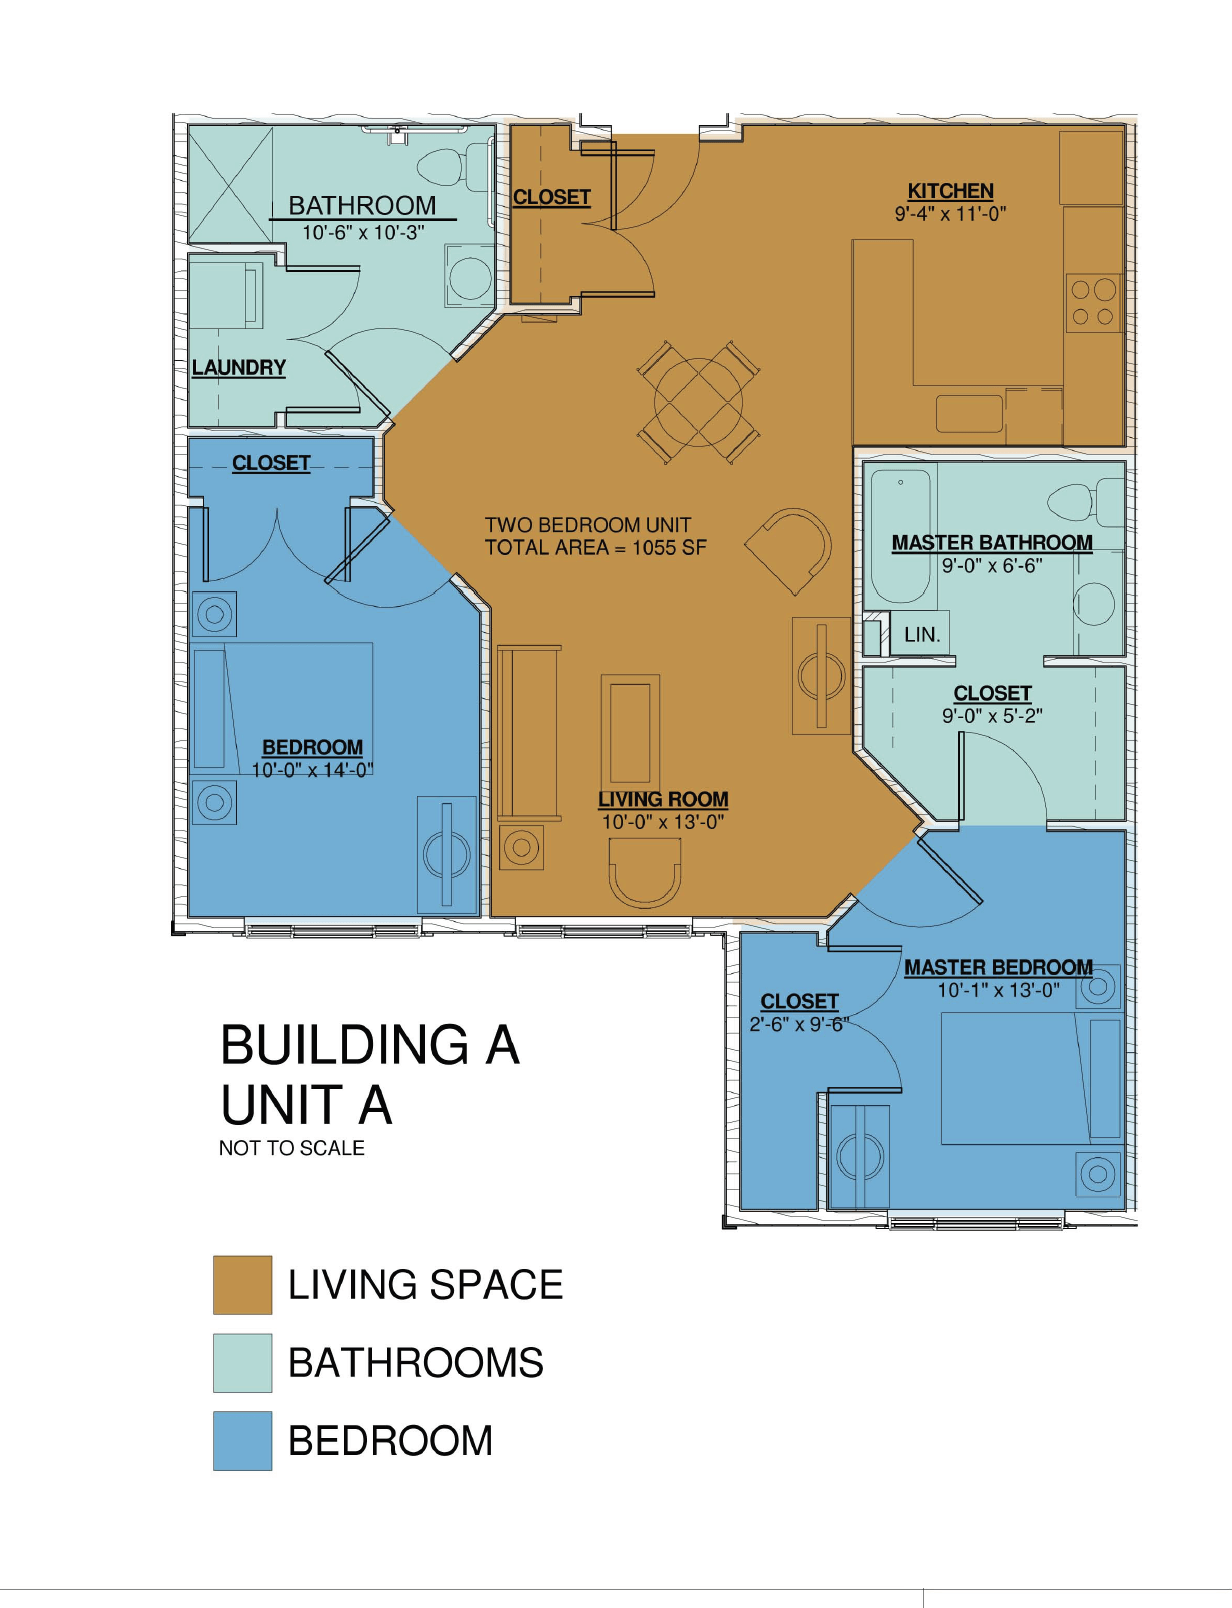 Building a unit a floor plan.